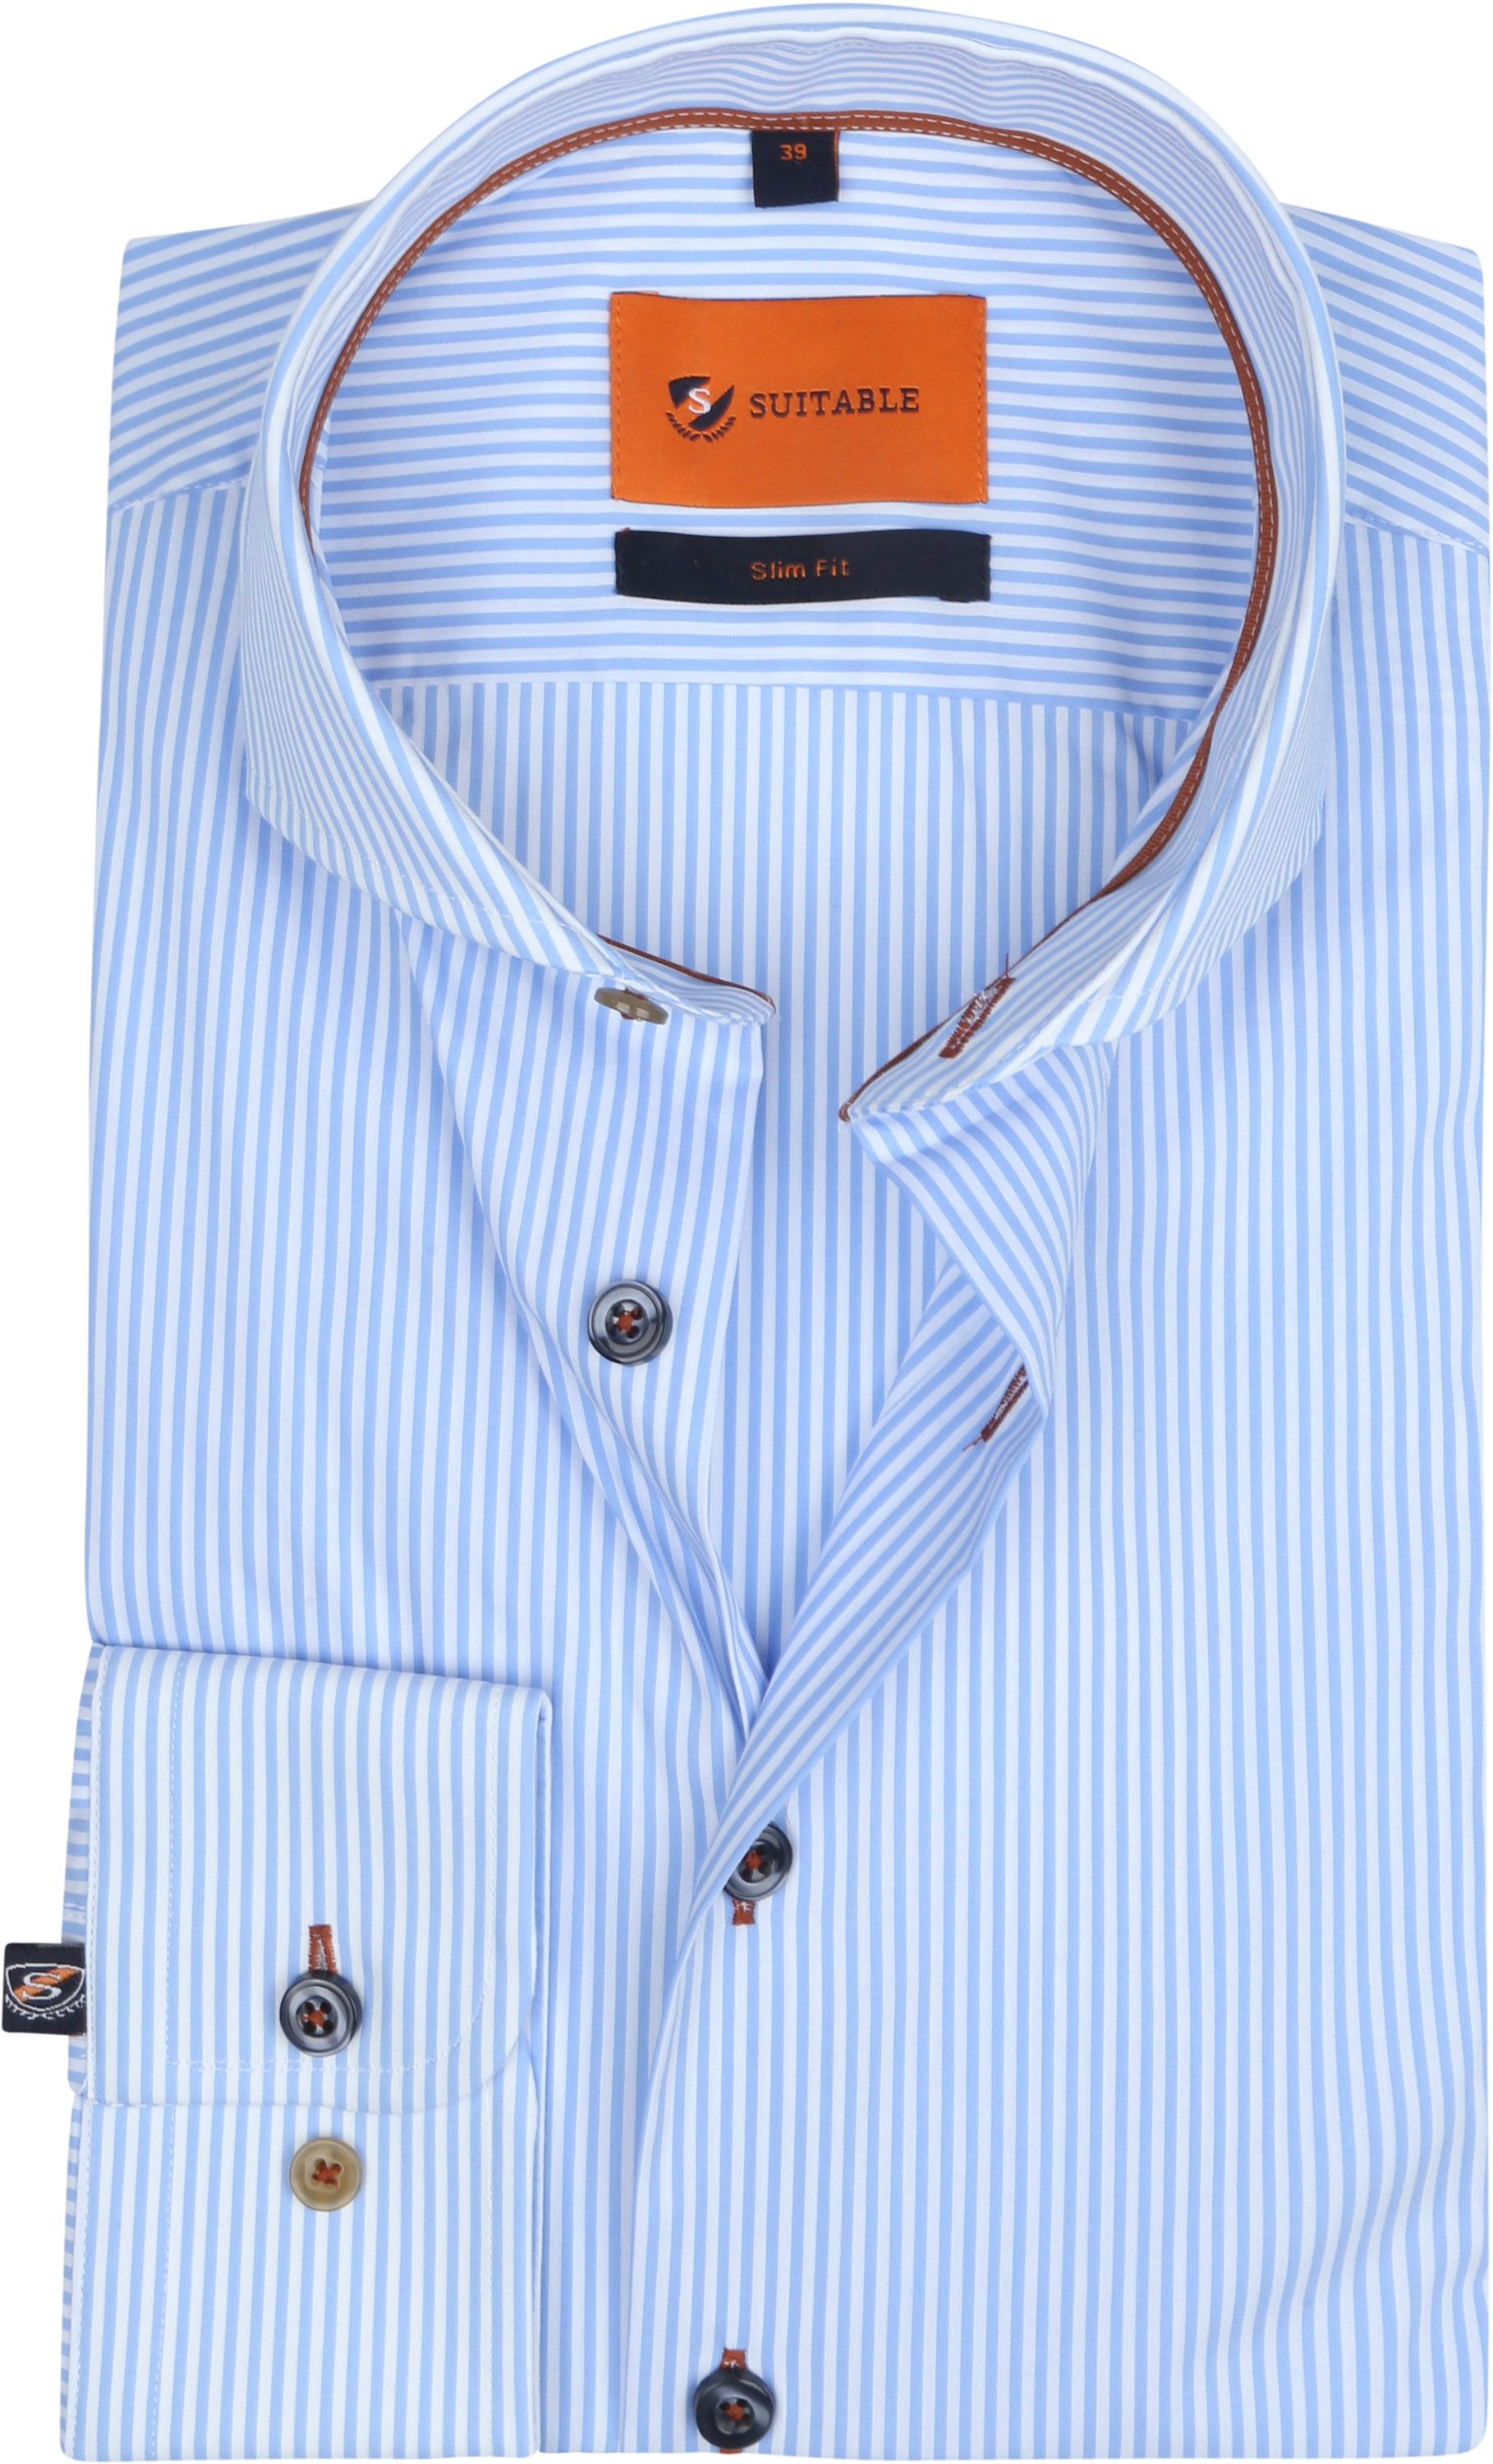 Suitable Shirt Stripes Light Light blue Blue size 15